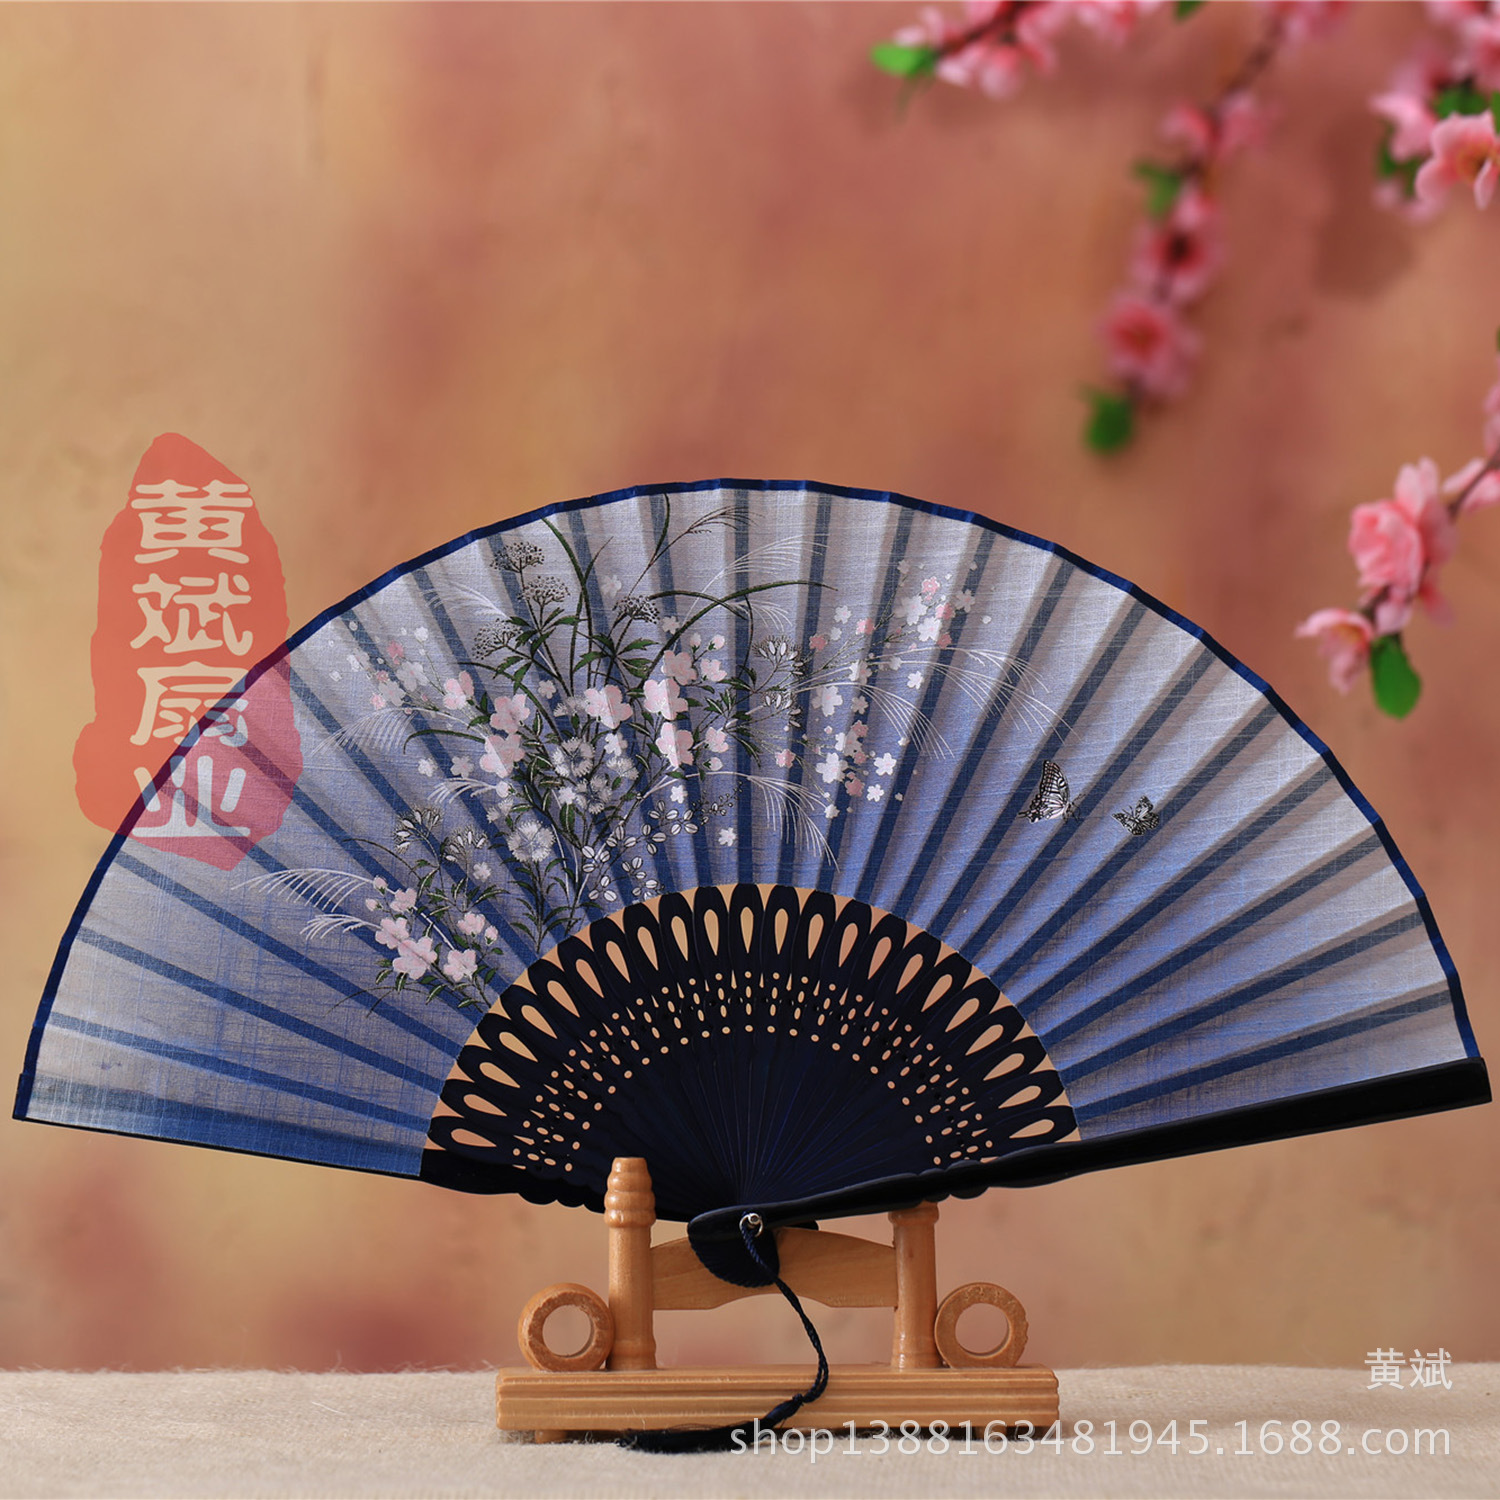 中国风礼品扇/新品女式亚麻/手工雕刻印花产品图